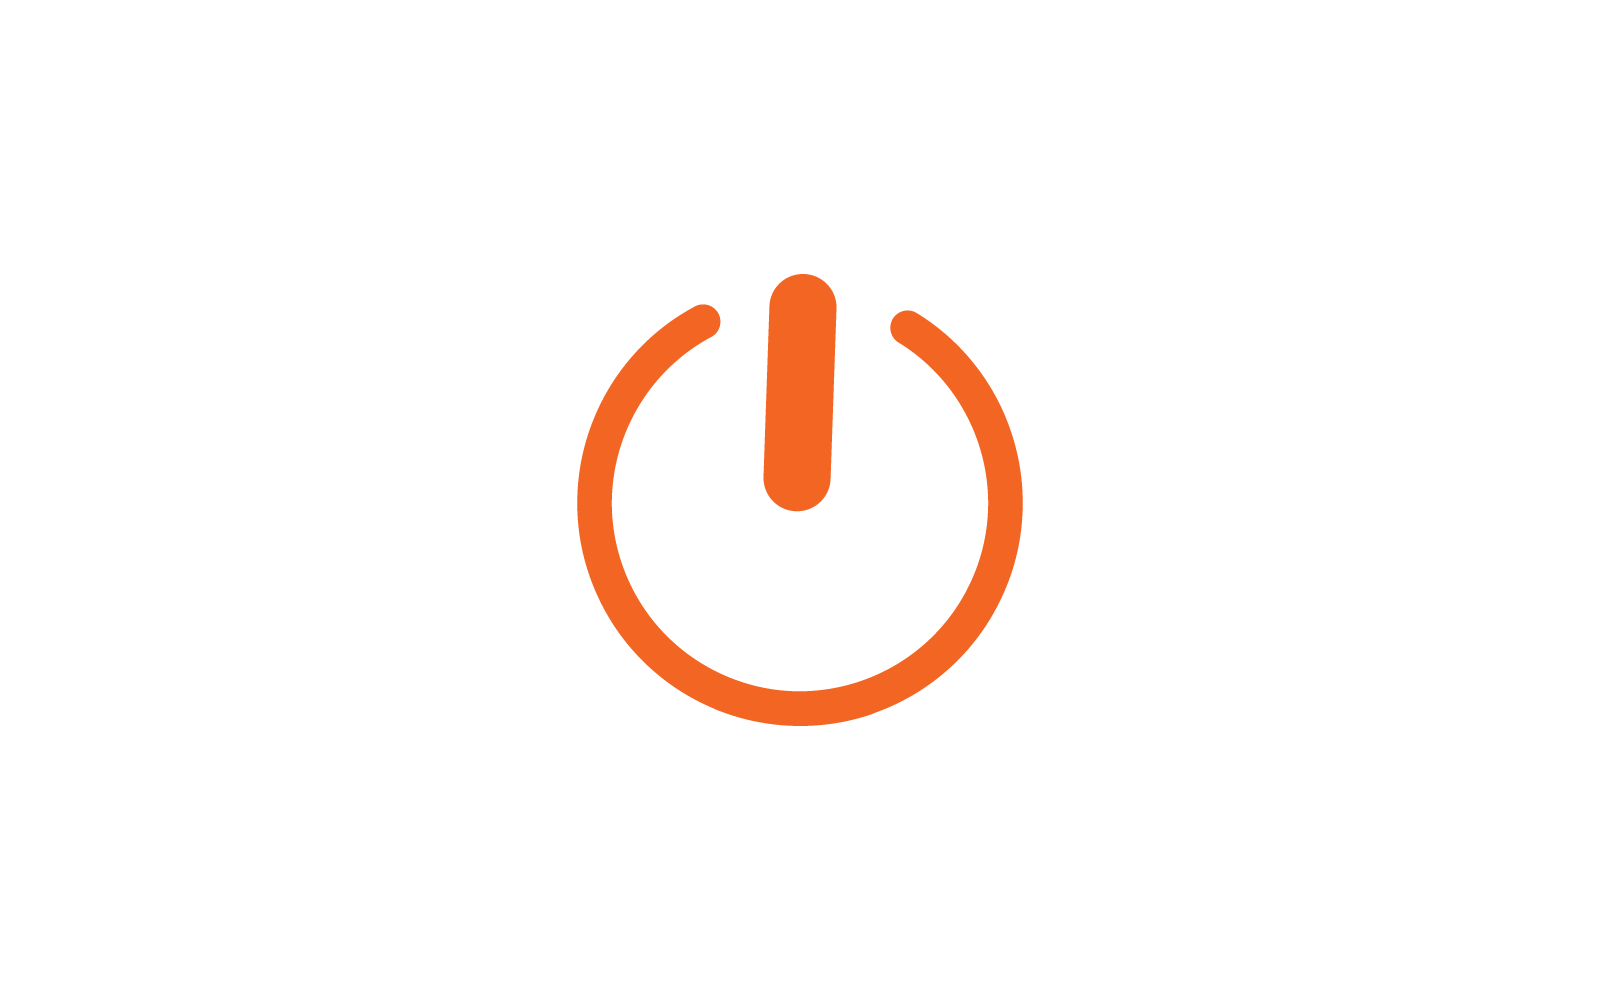 Power button icon vector template